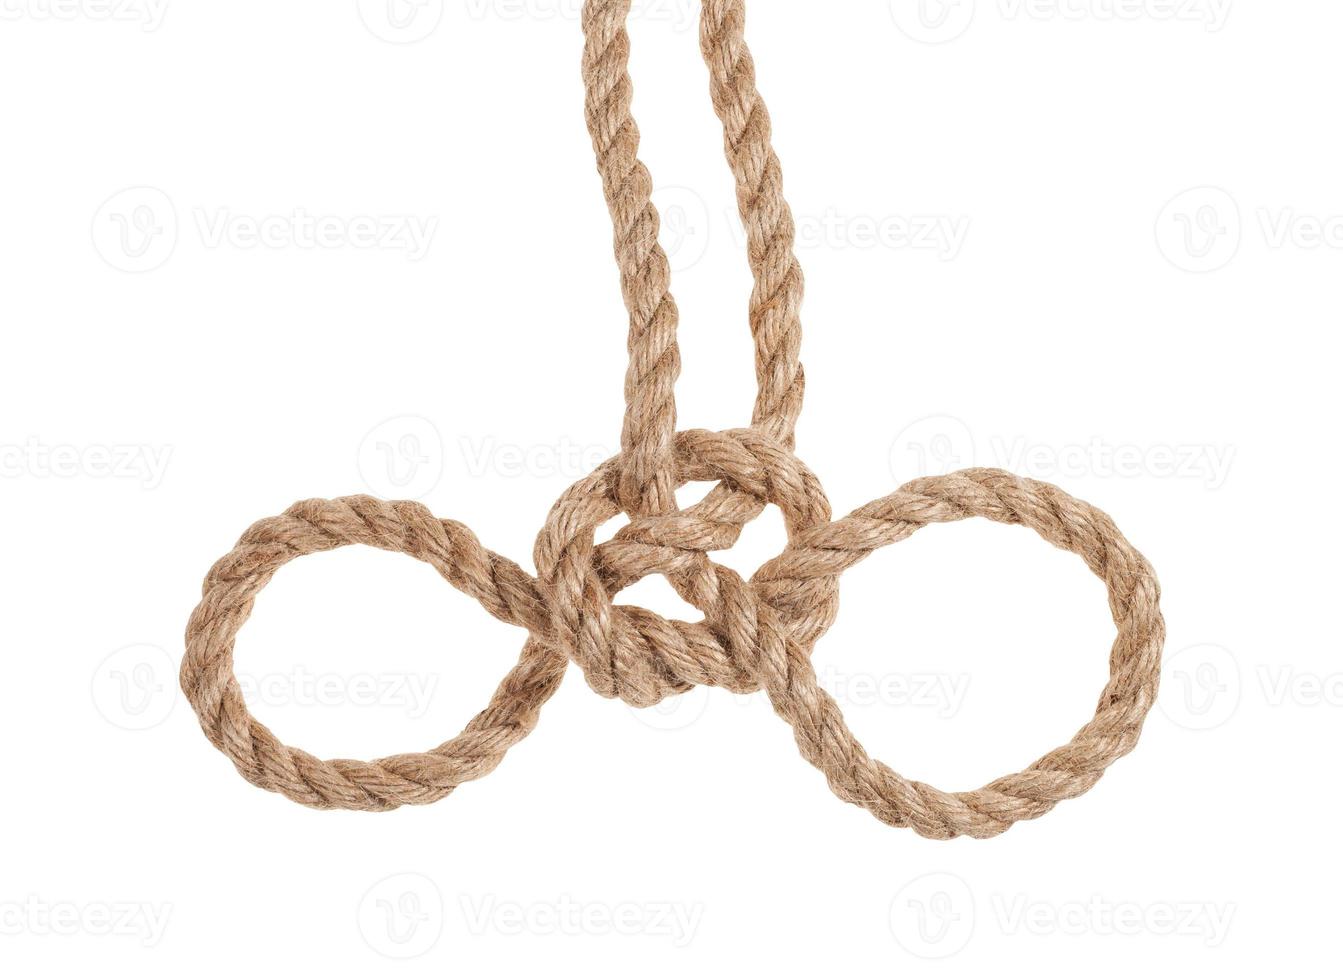 un autre côté du noeud de menottes attaché sur une corde de jute photo